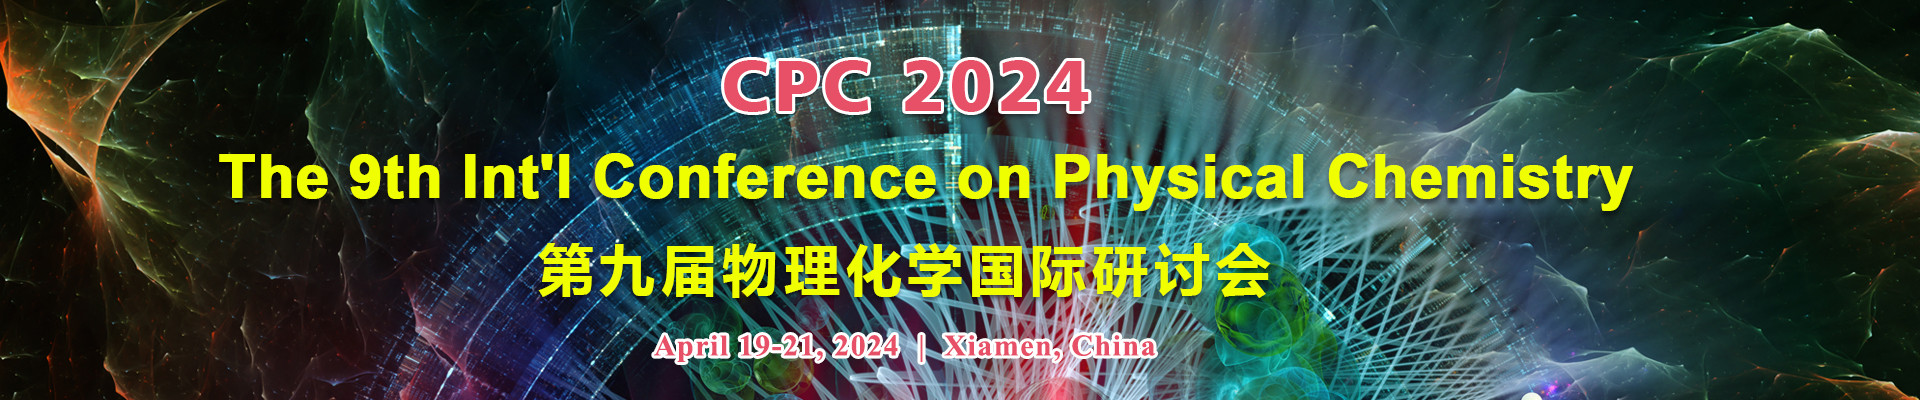 第九届物理化学国际研讨会(CPC 2024)